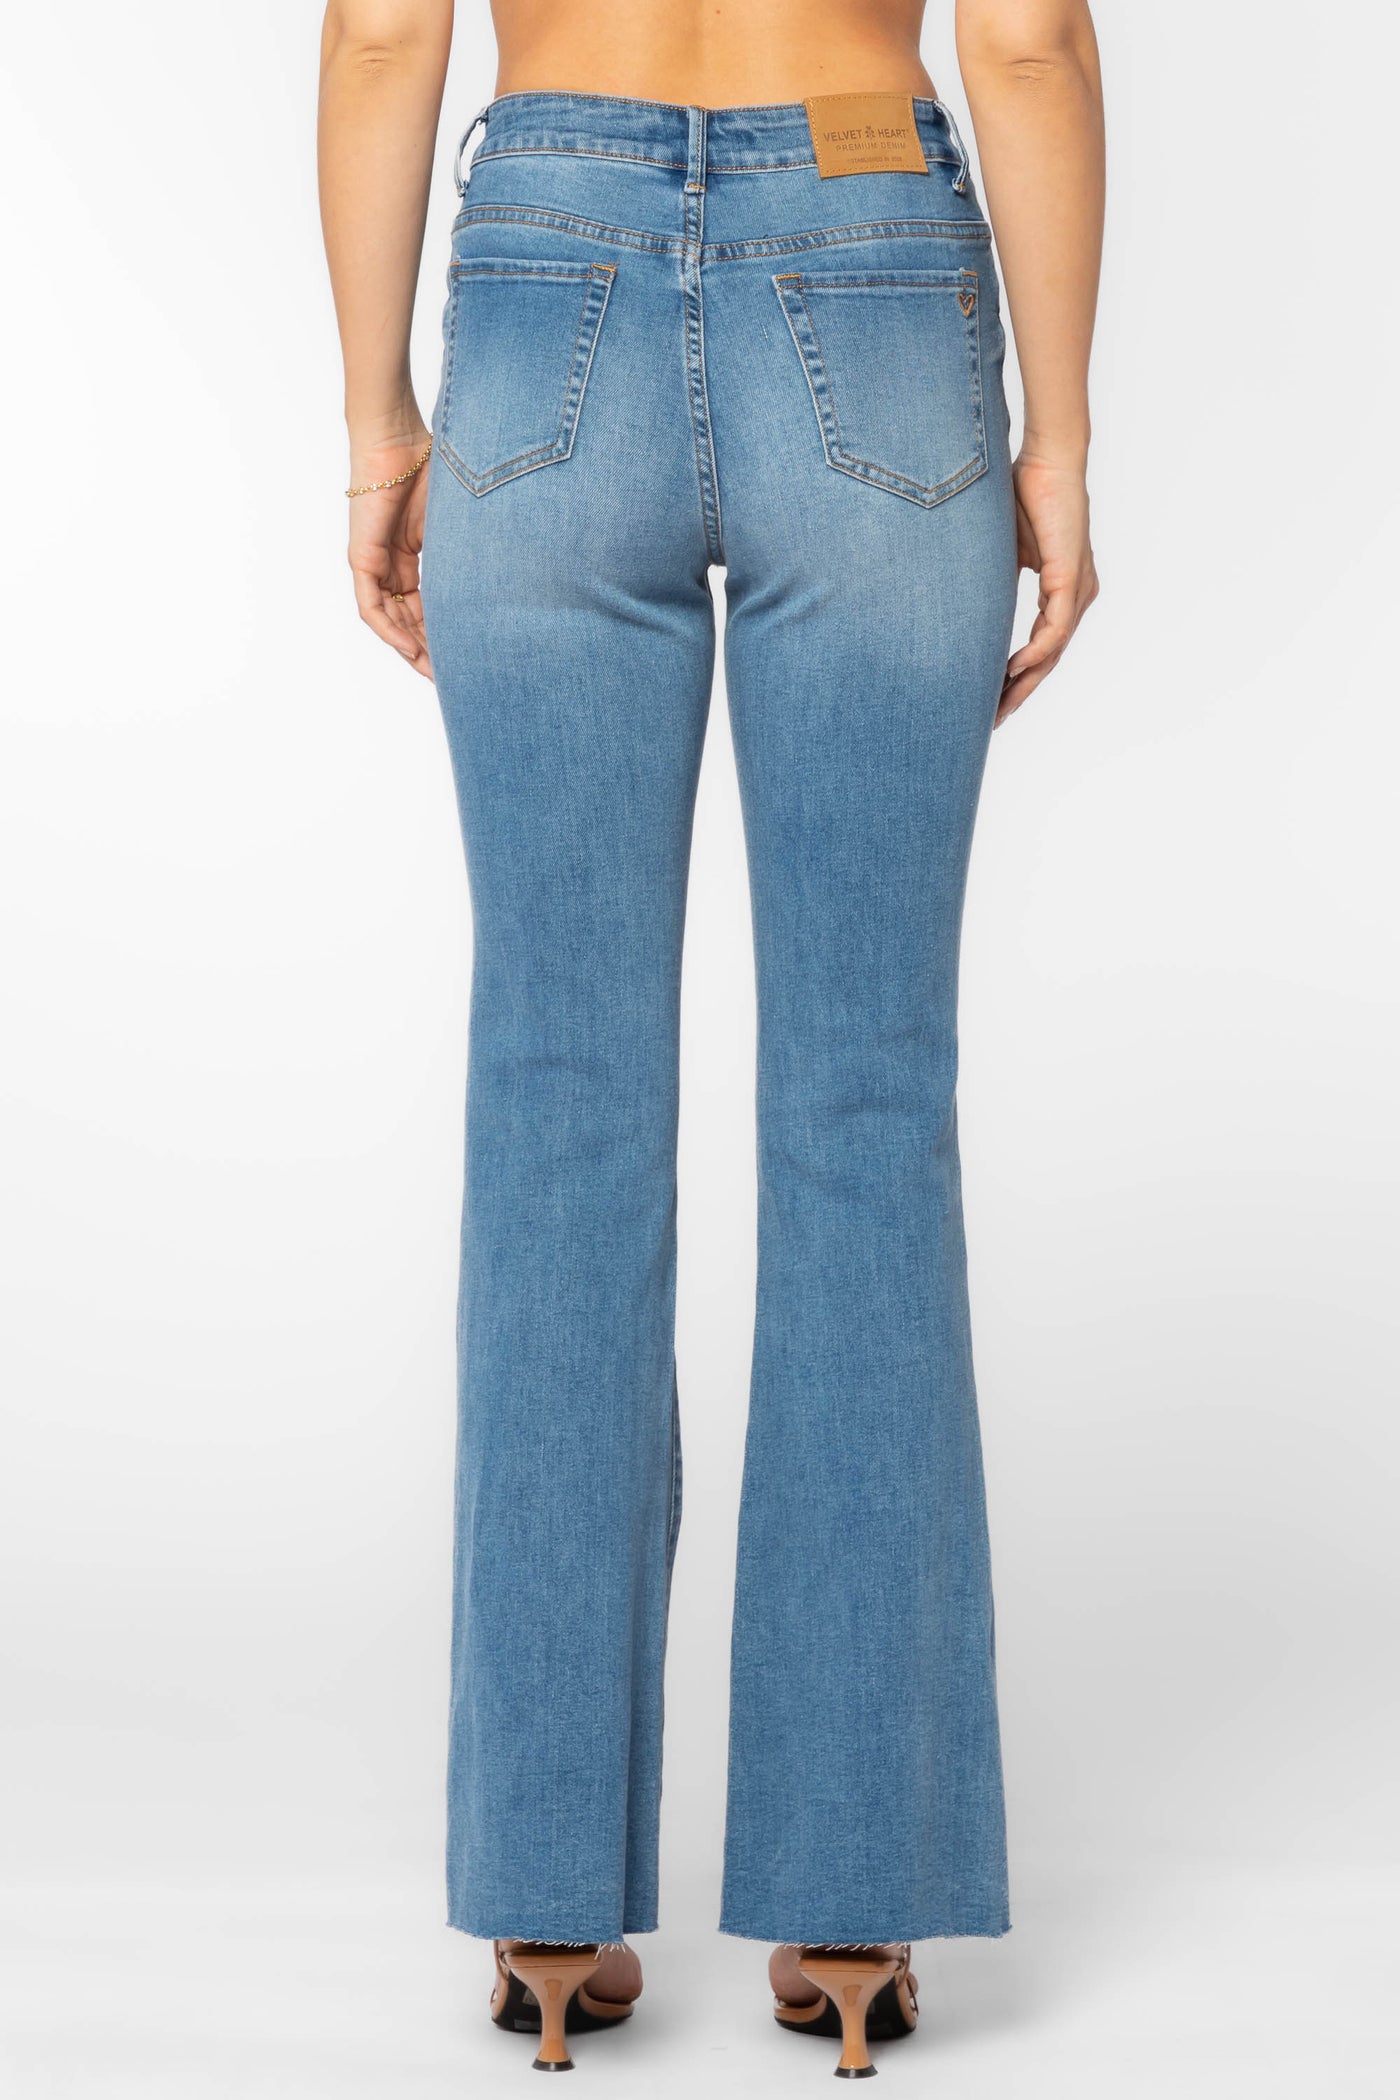 Zoe Blue Jeans - Bottoms - Velvet Heart Clothing